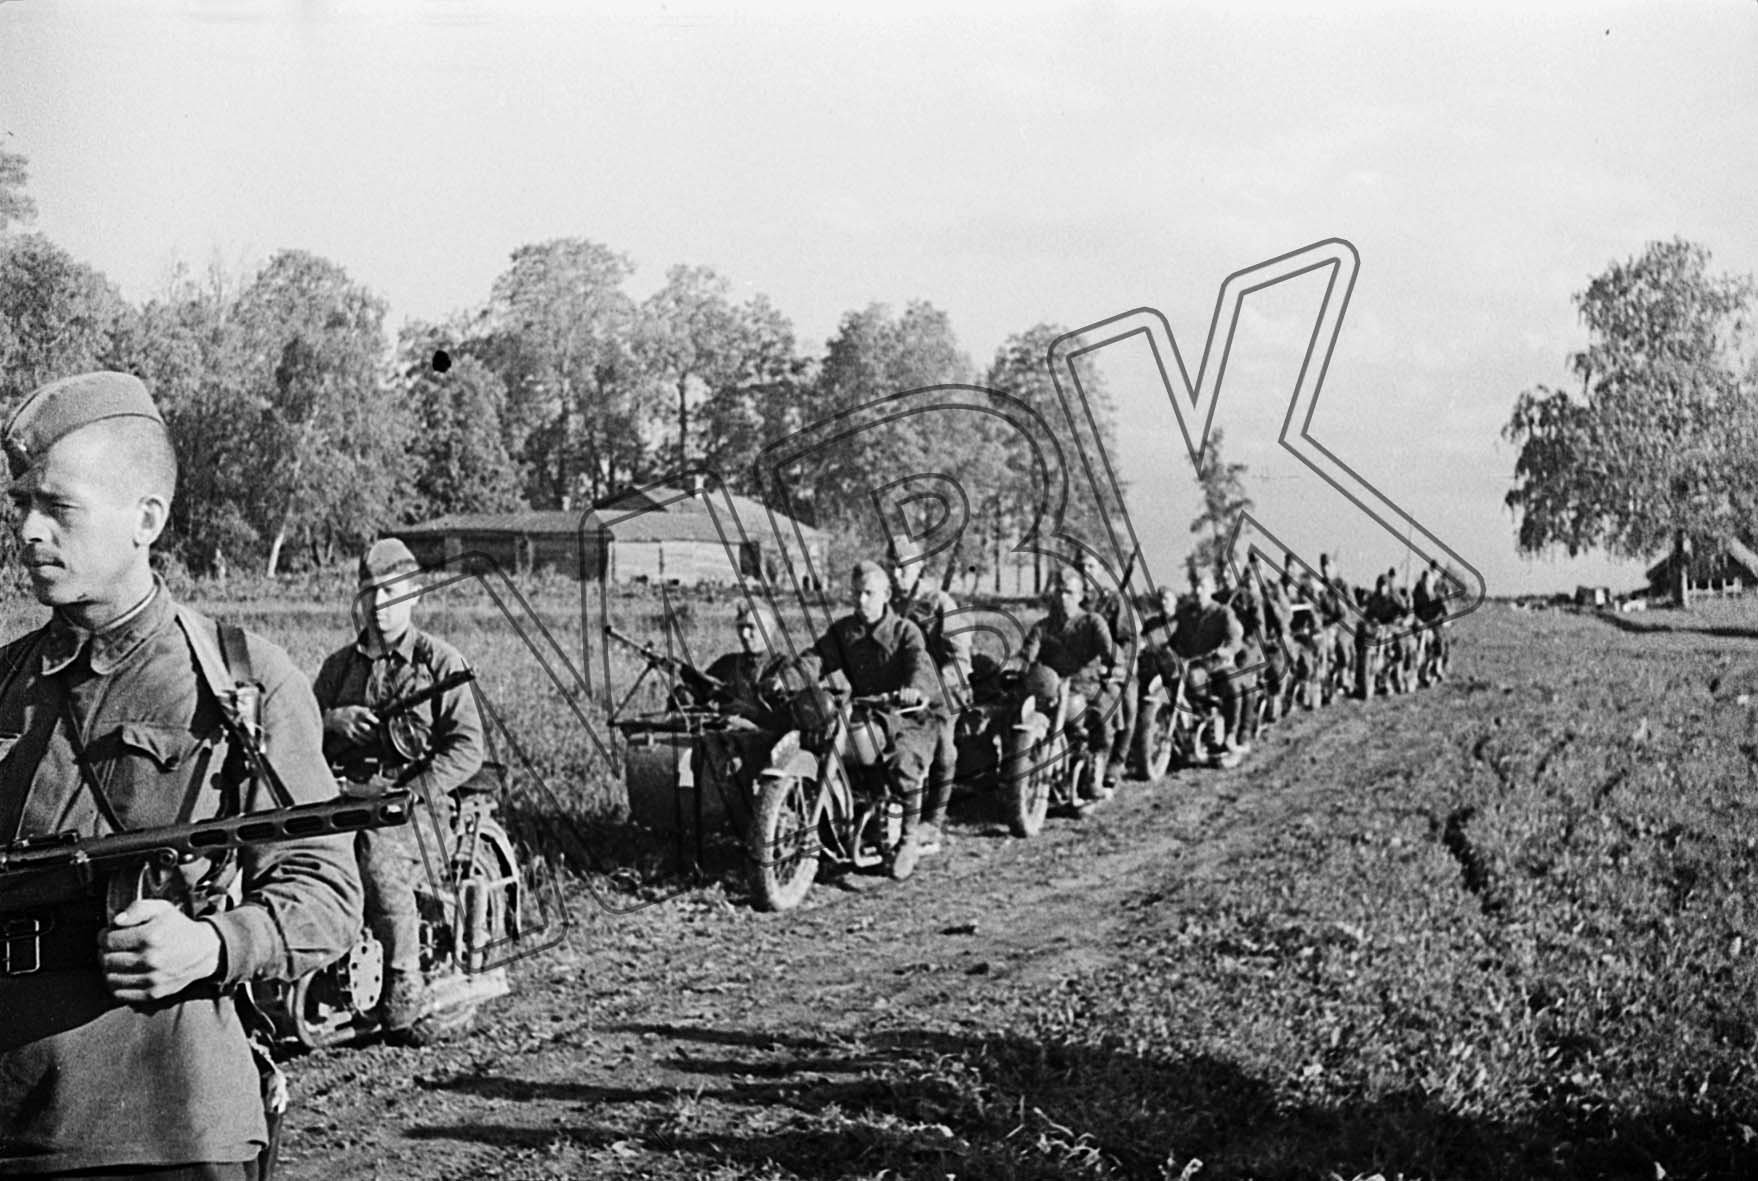 Fotografie: Krad-MG-Schützenabteilung vor einem Kampfeinsatz, Westfront, 8. Juni 1942 (Museum Berlin-Karlshorst RR-P)